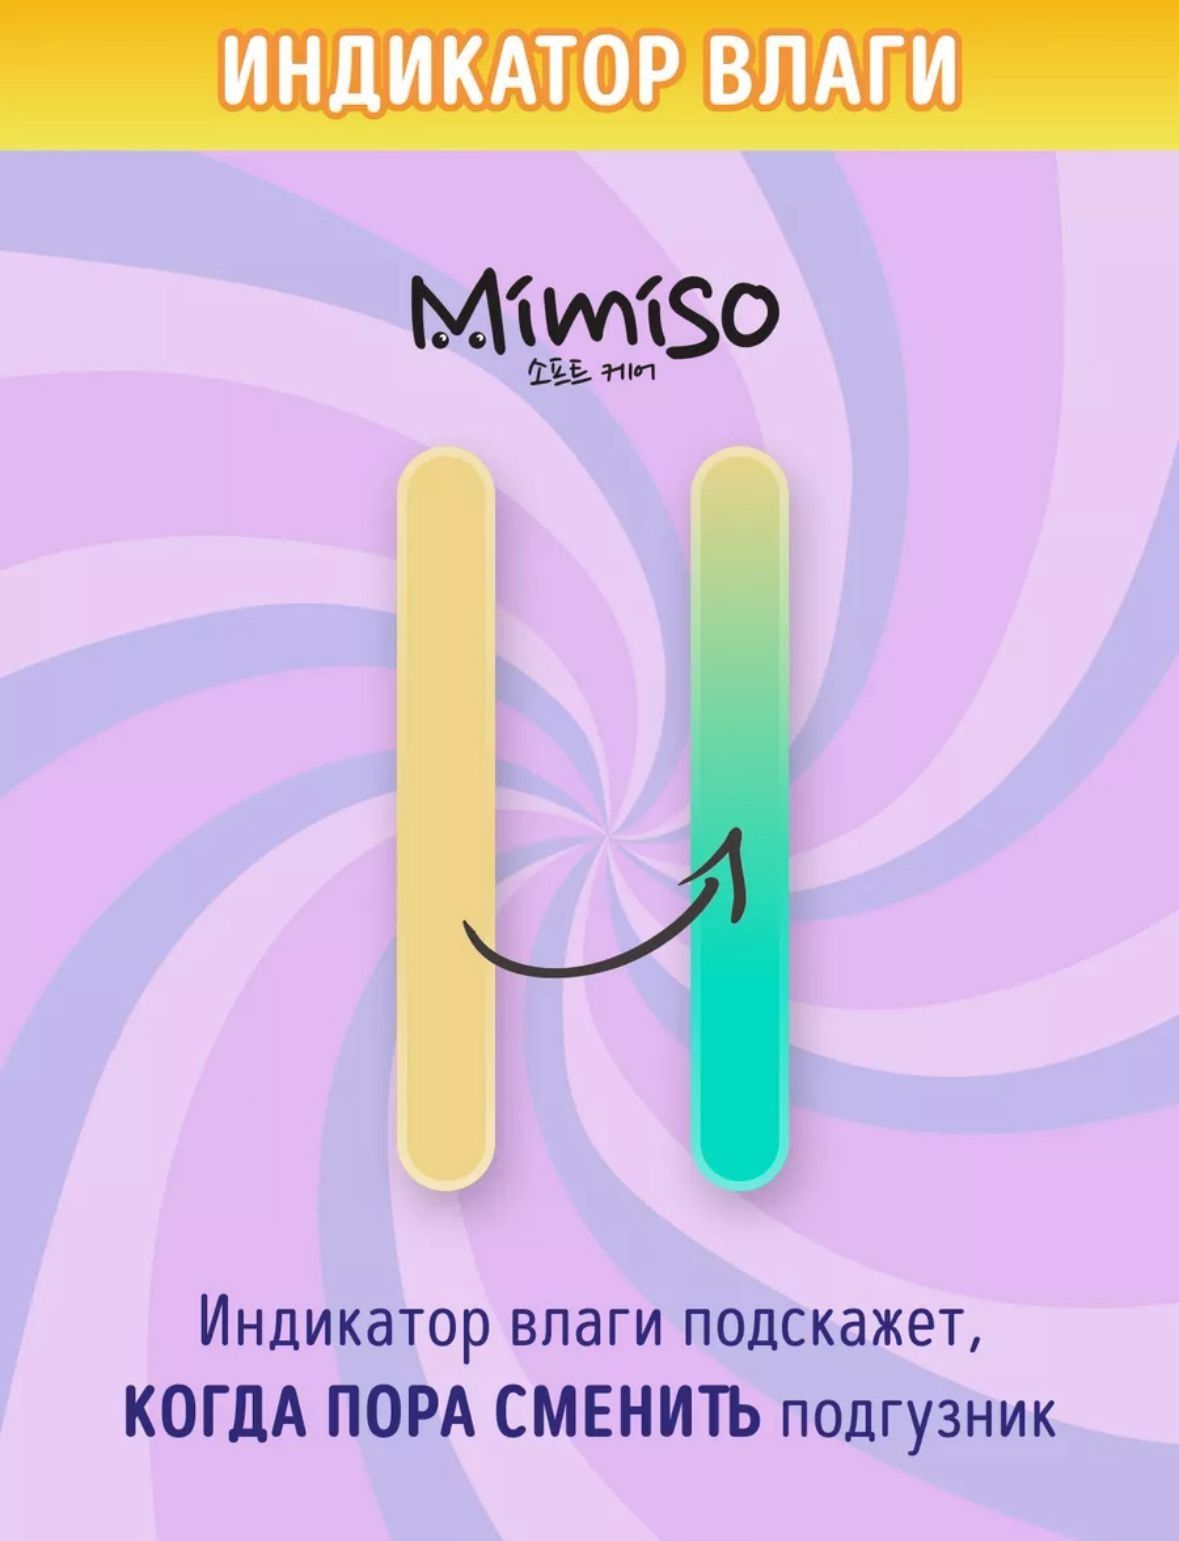 Подгузники и трусики мимисо Mimiso